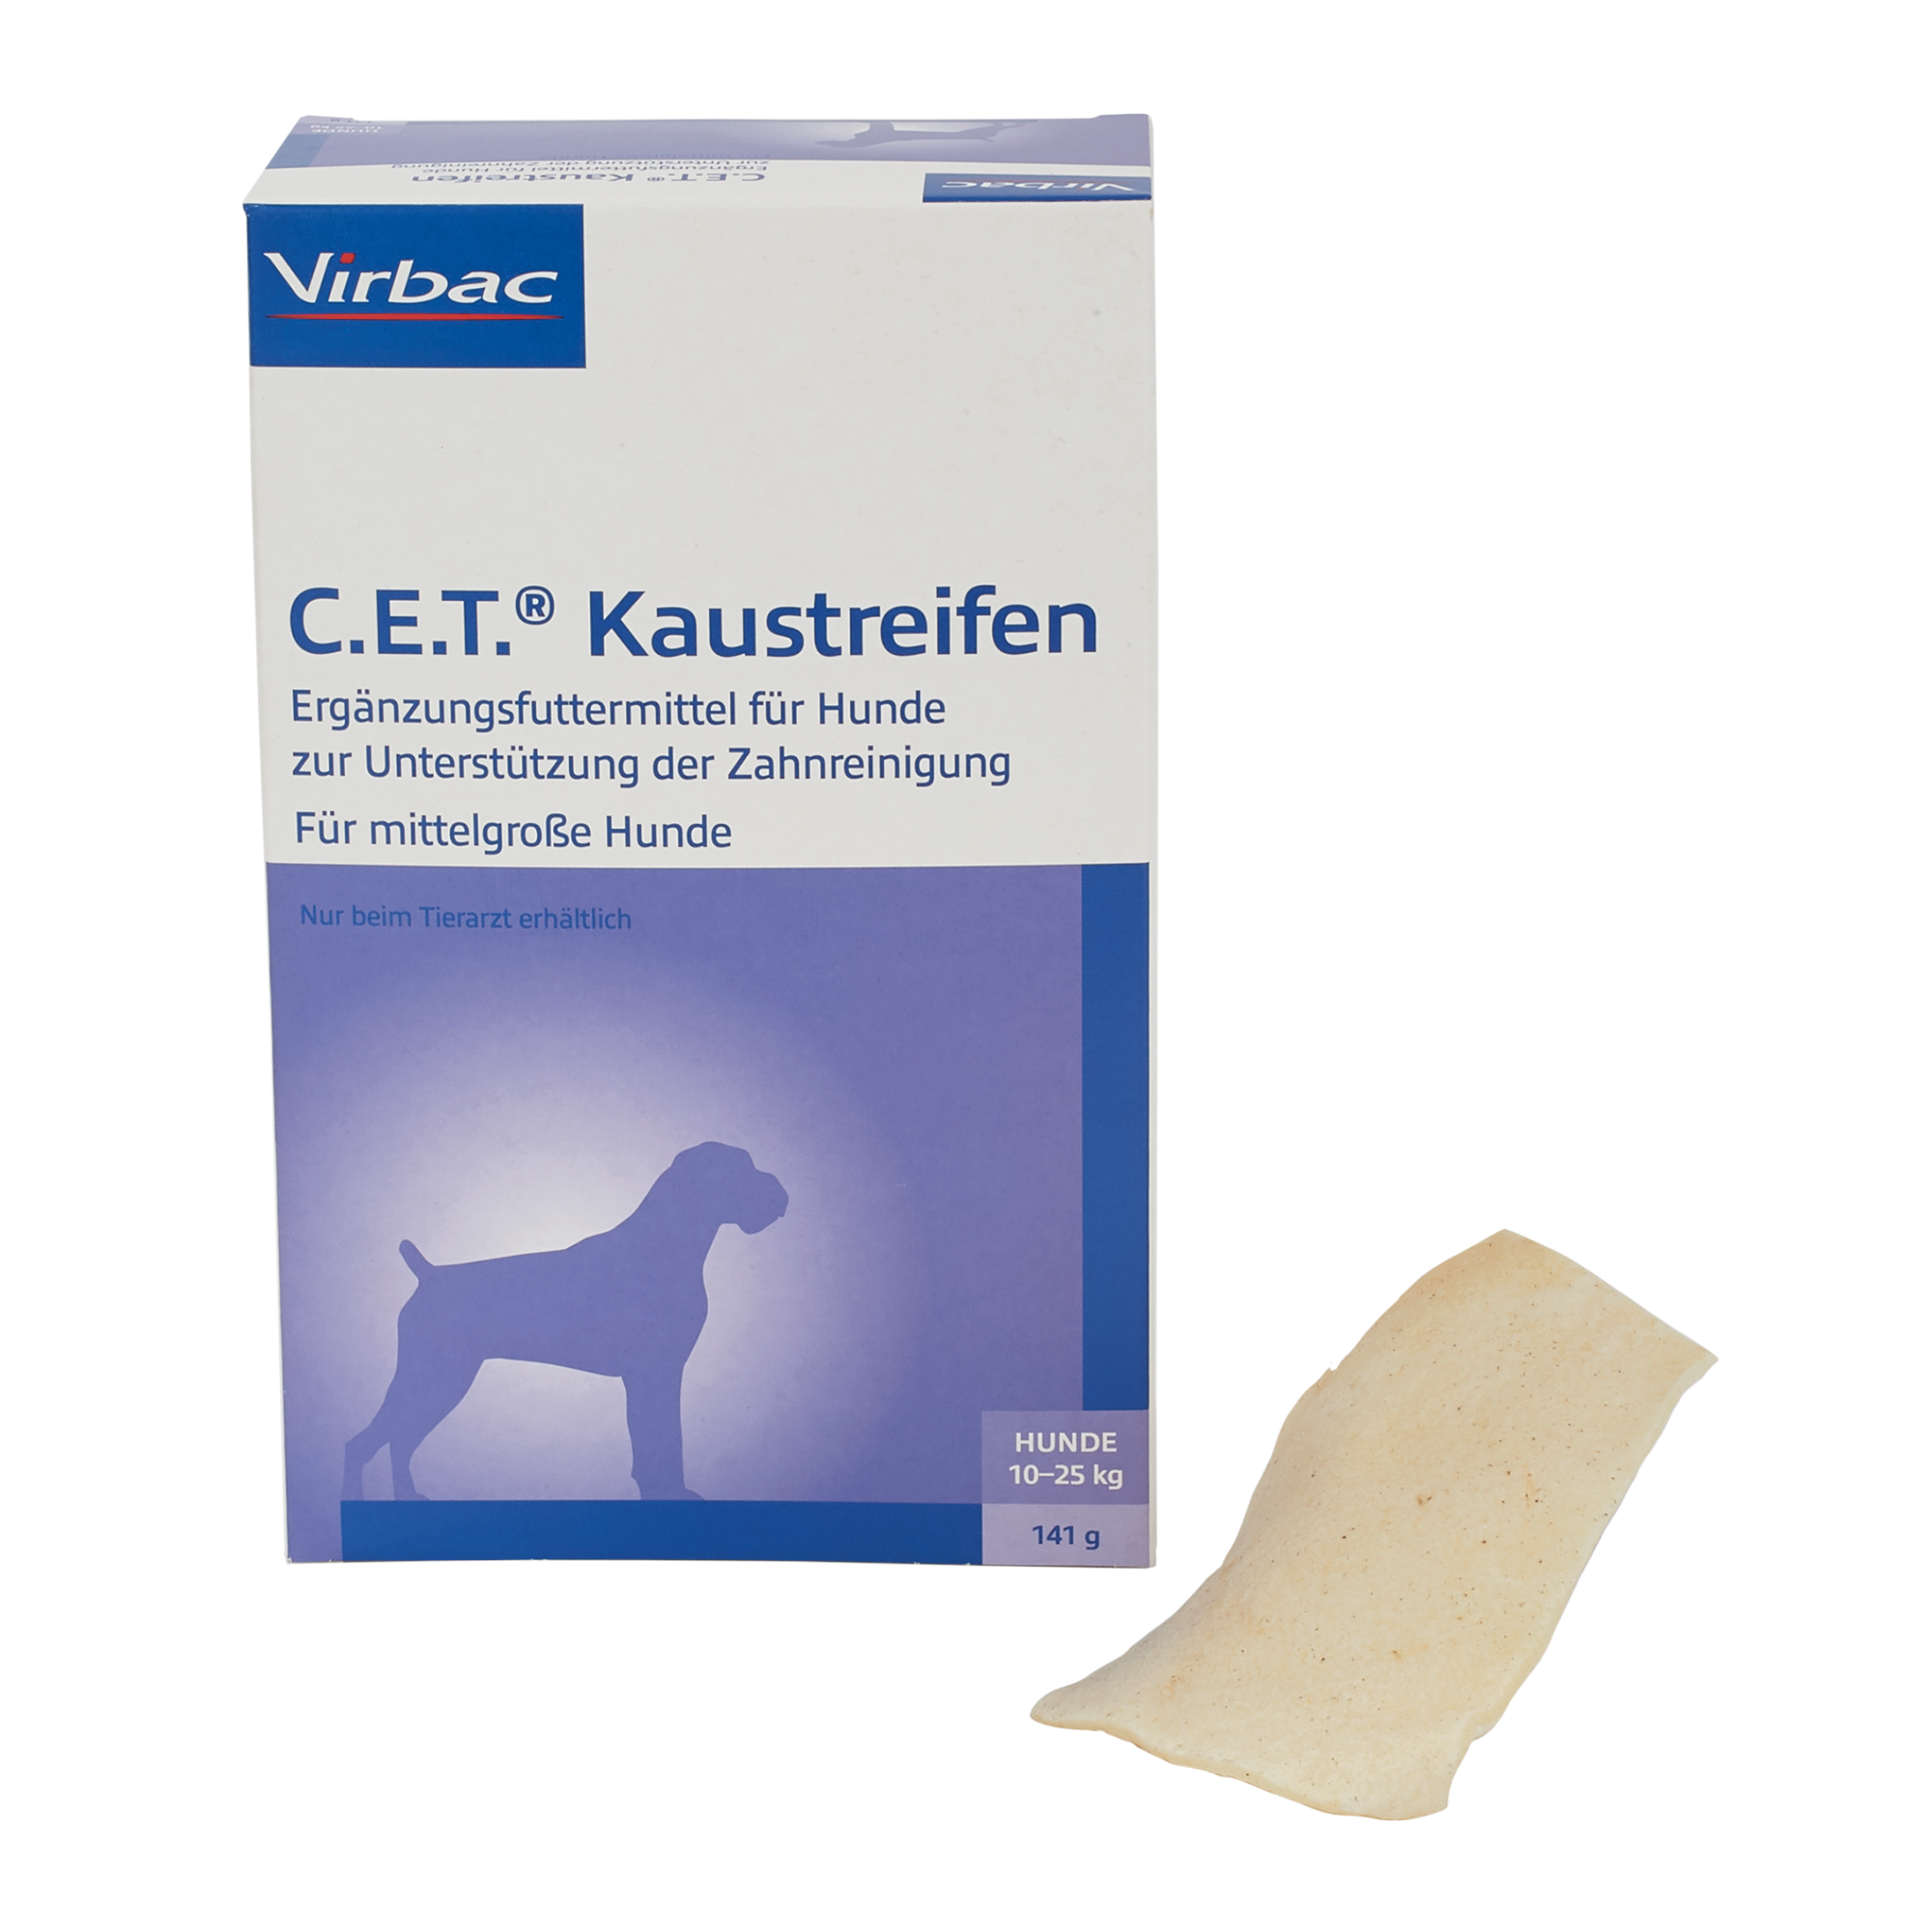 C.E.T. Kaustreifen für mittelgroße Hunde